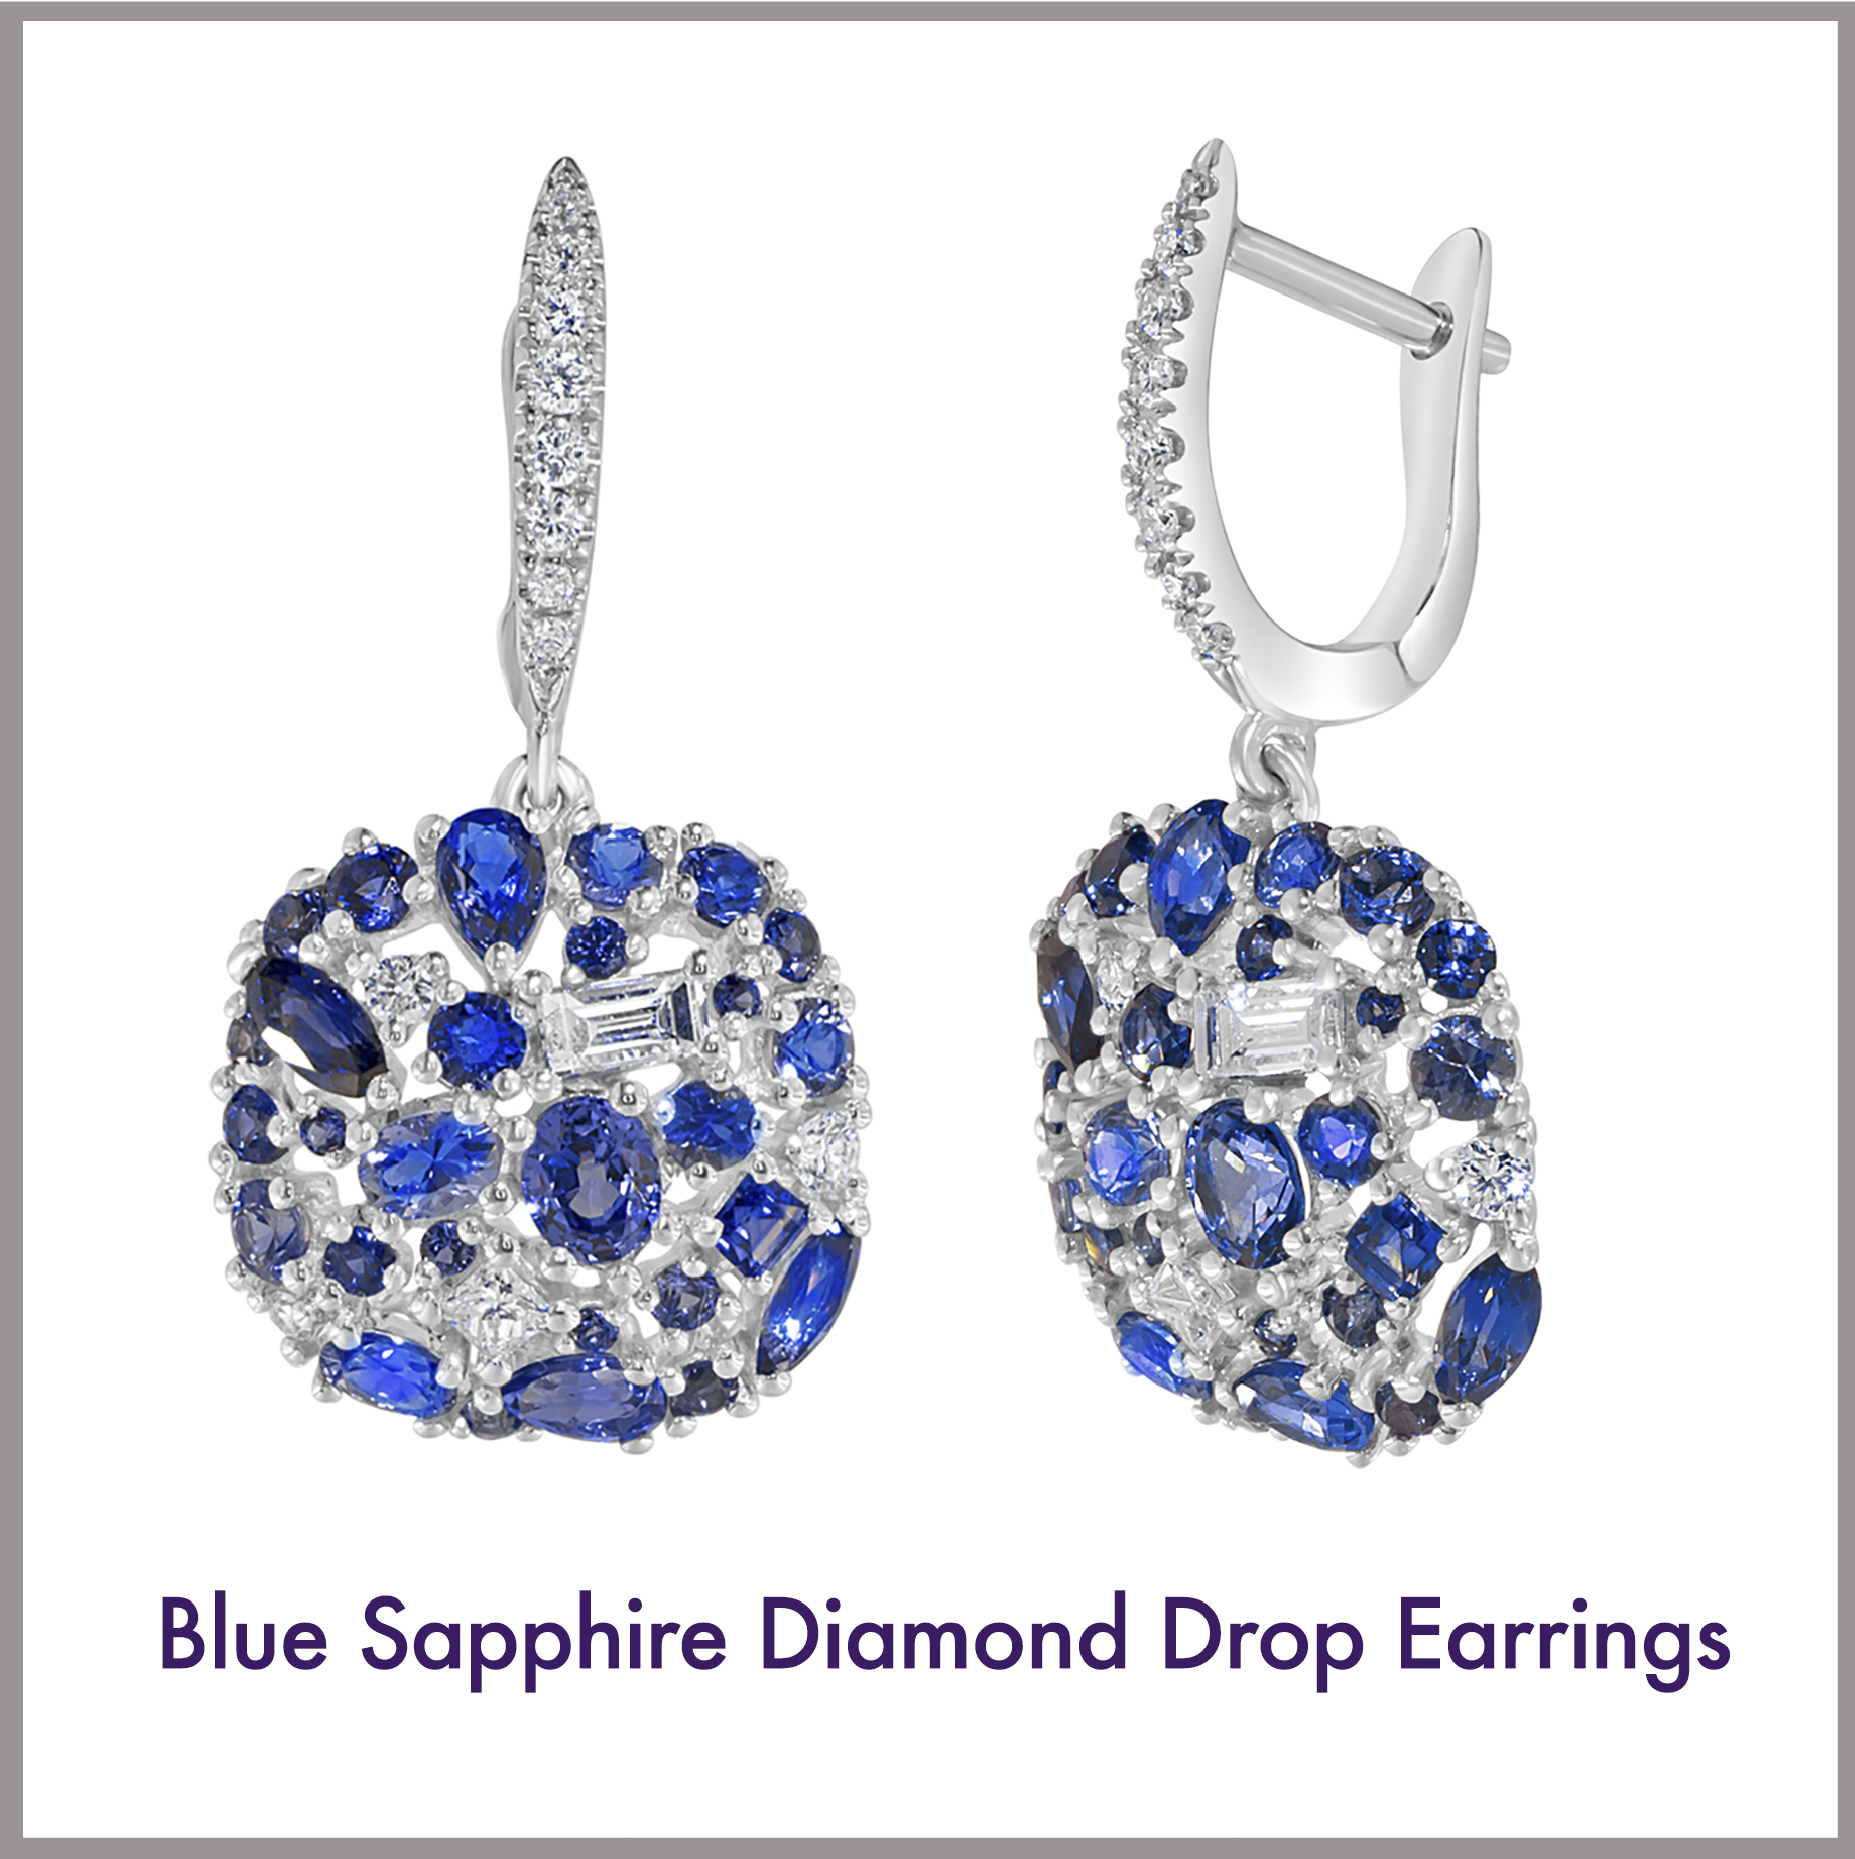 Blue Sapphire Diamond Drop Earrings